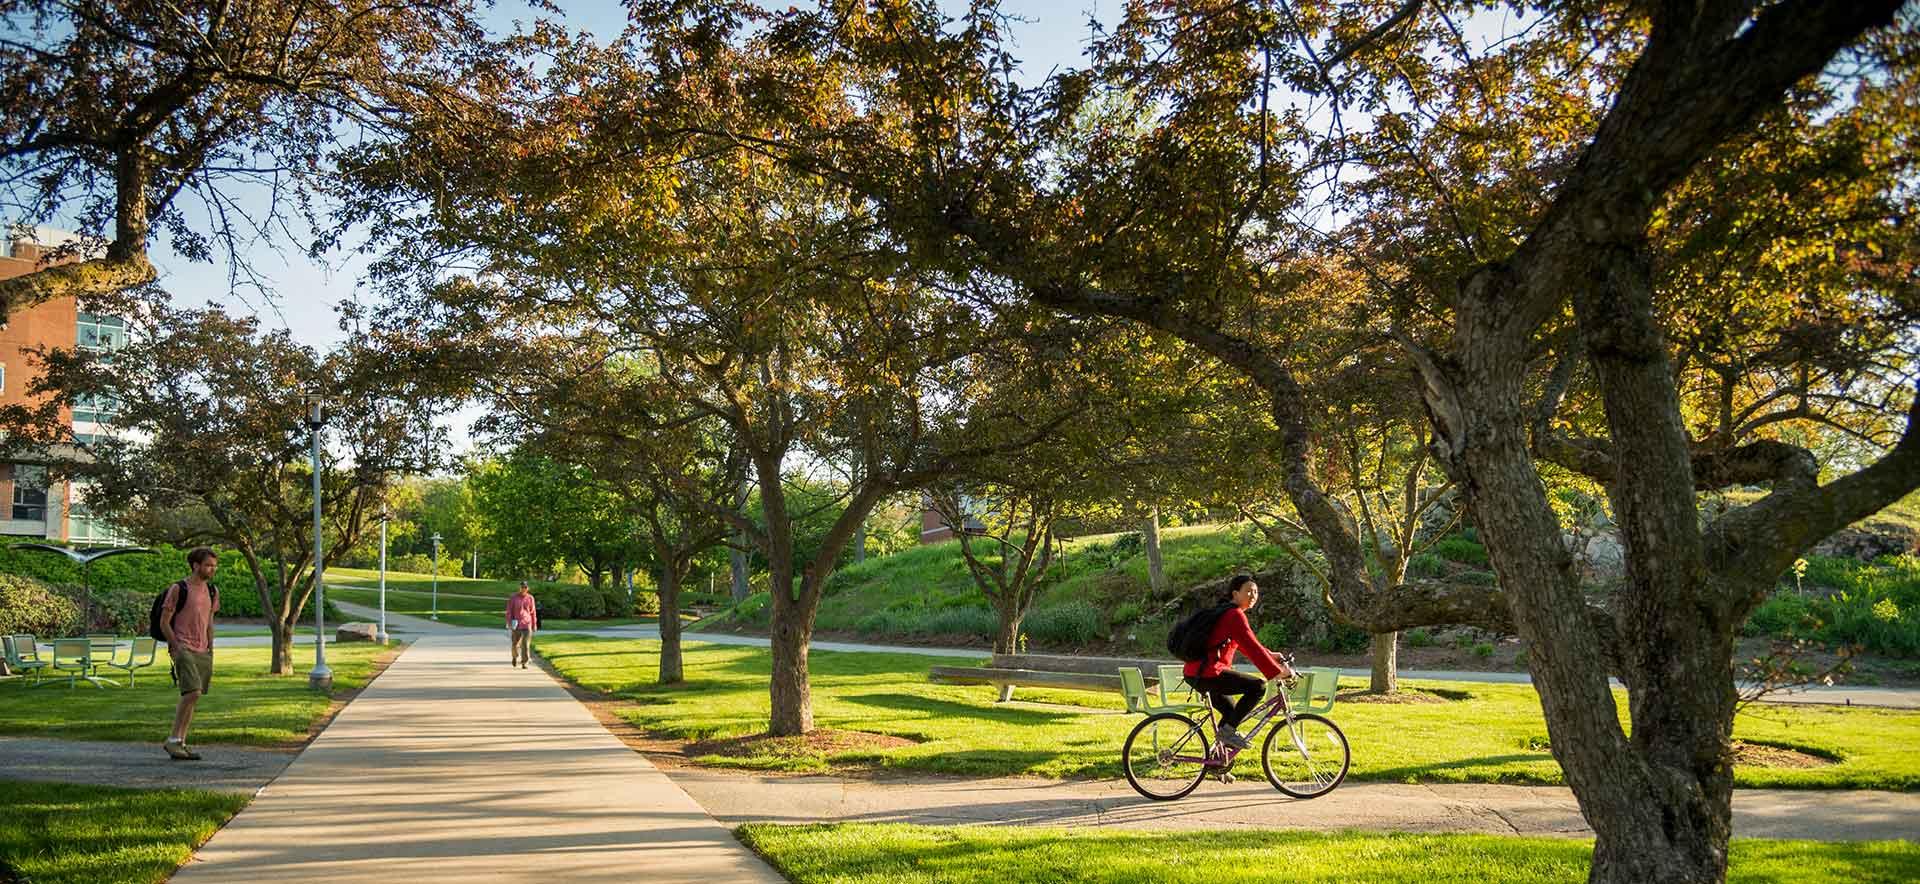 同伴花园的景色，一个女人骑着自行车，两个人在散步